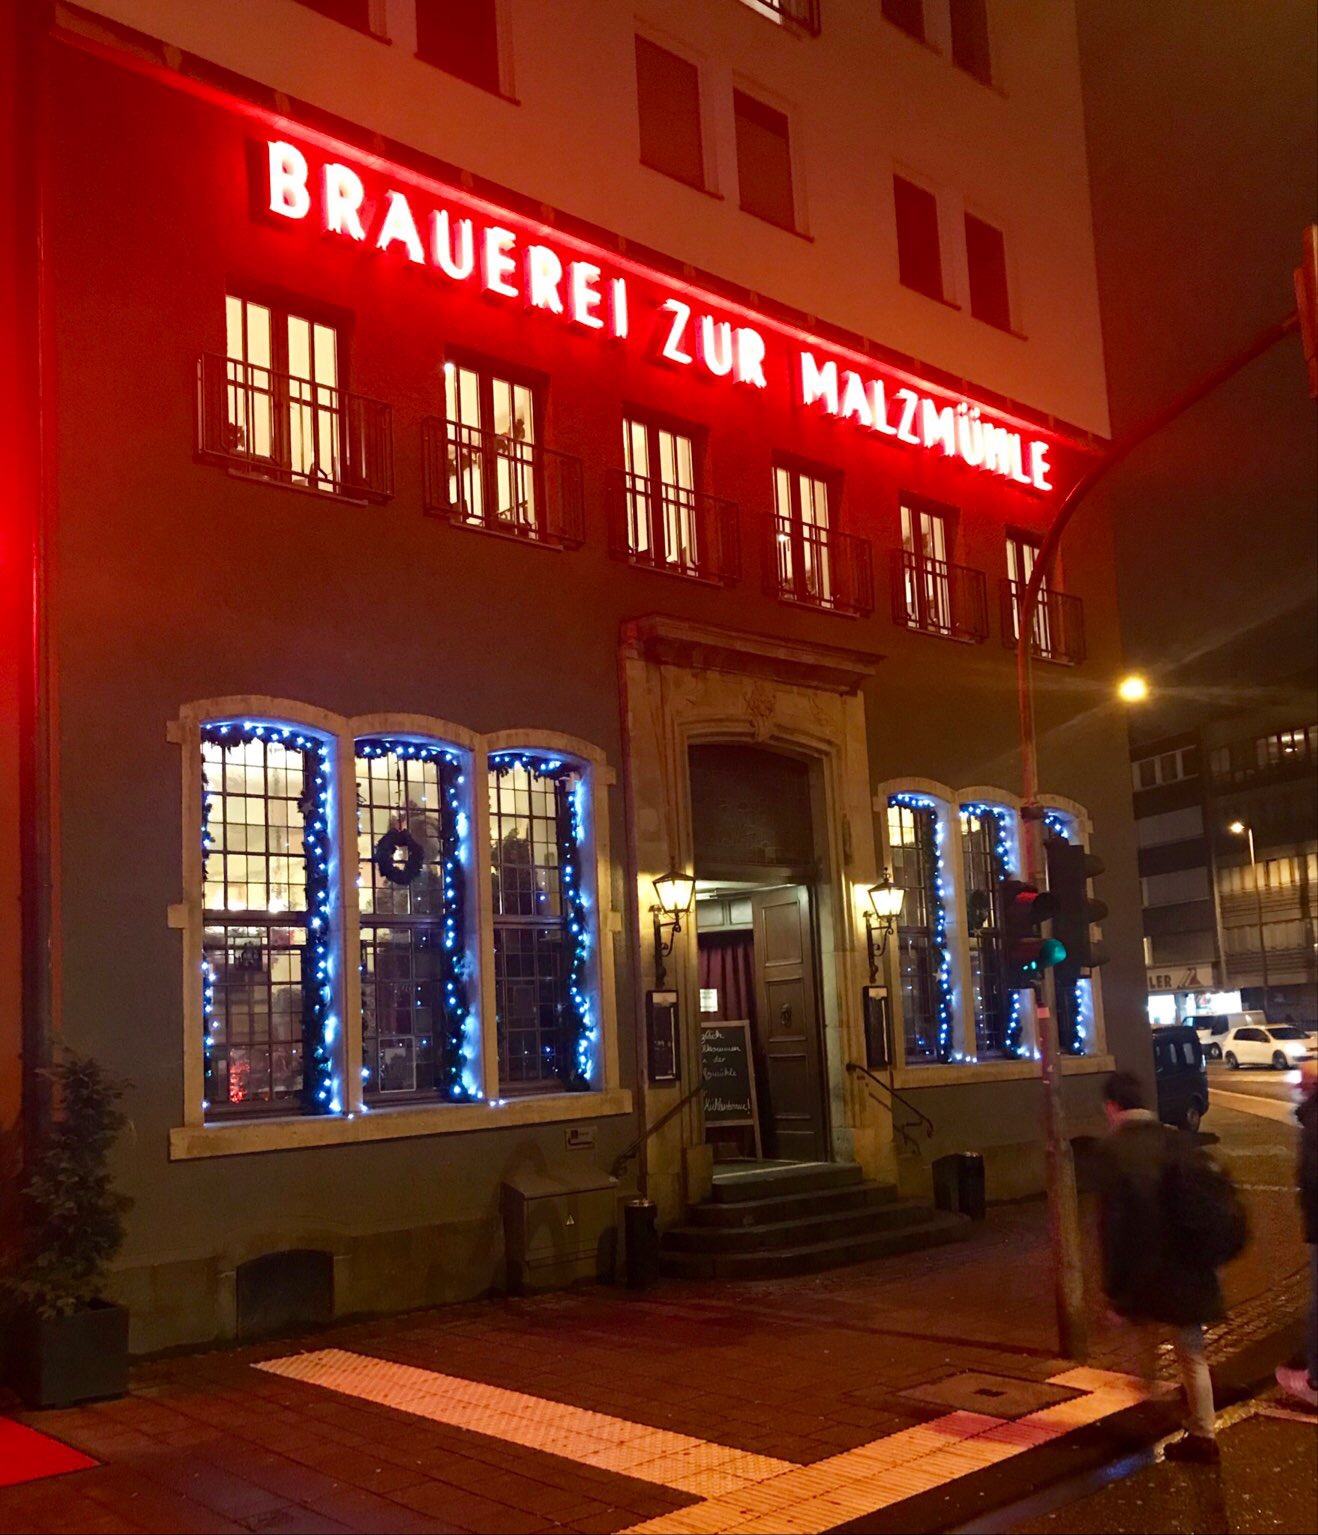 Brauerei zur Malzmühle in Köln